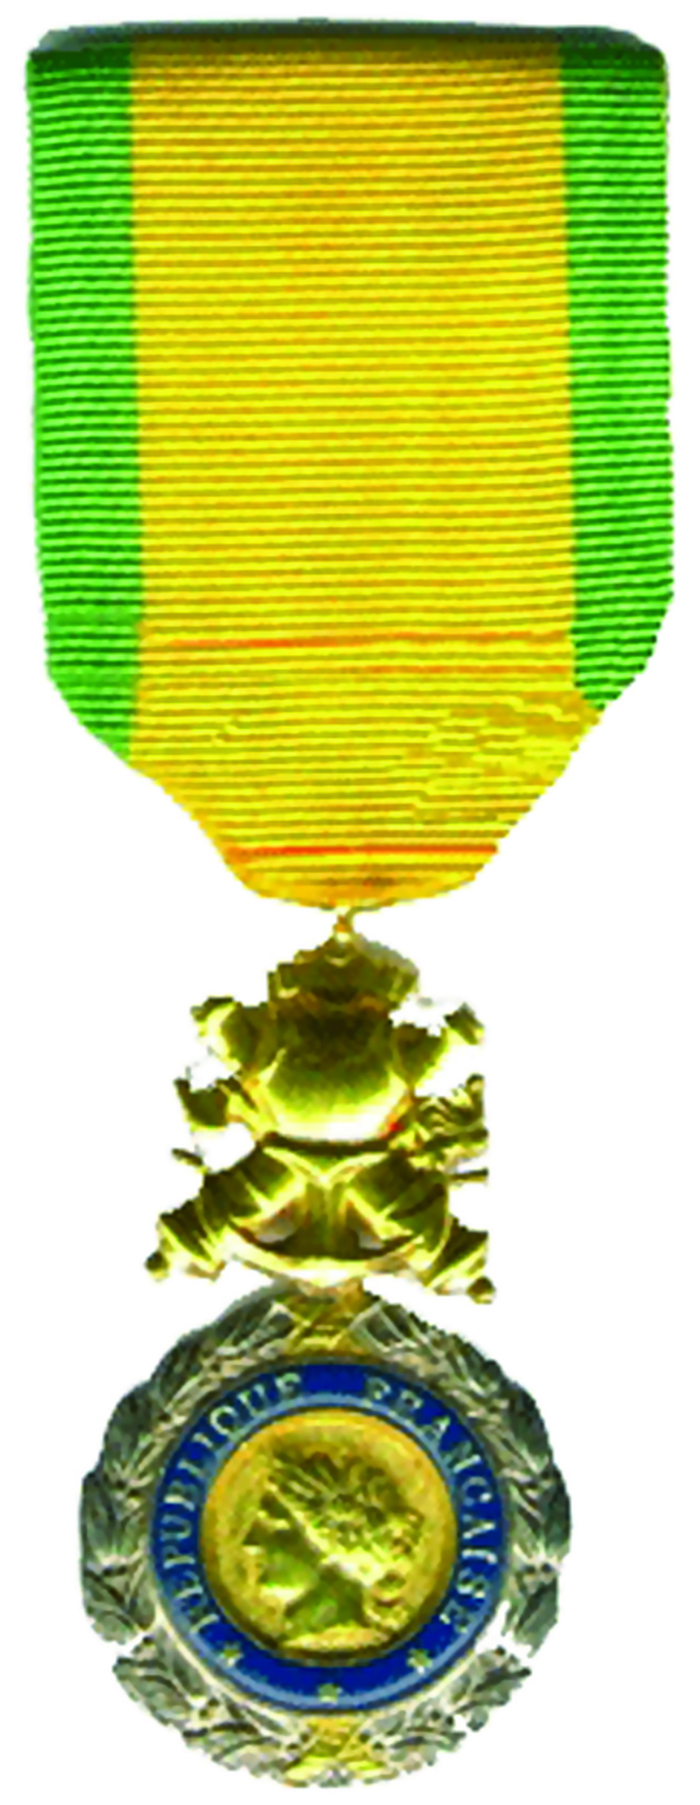 Medaille Militaire  (საფრანგეთის სამხედრო მედალი)